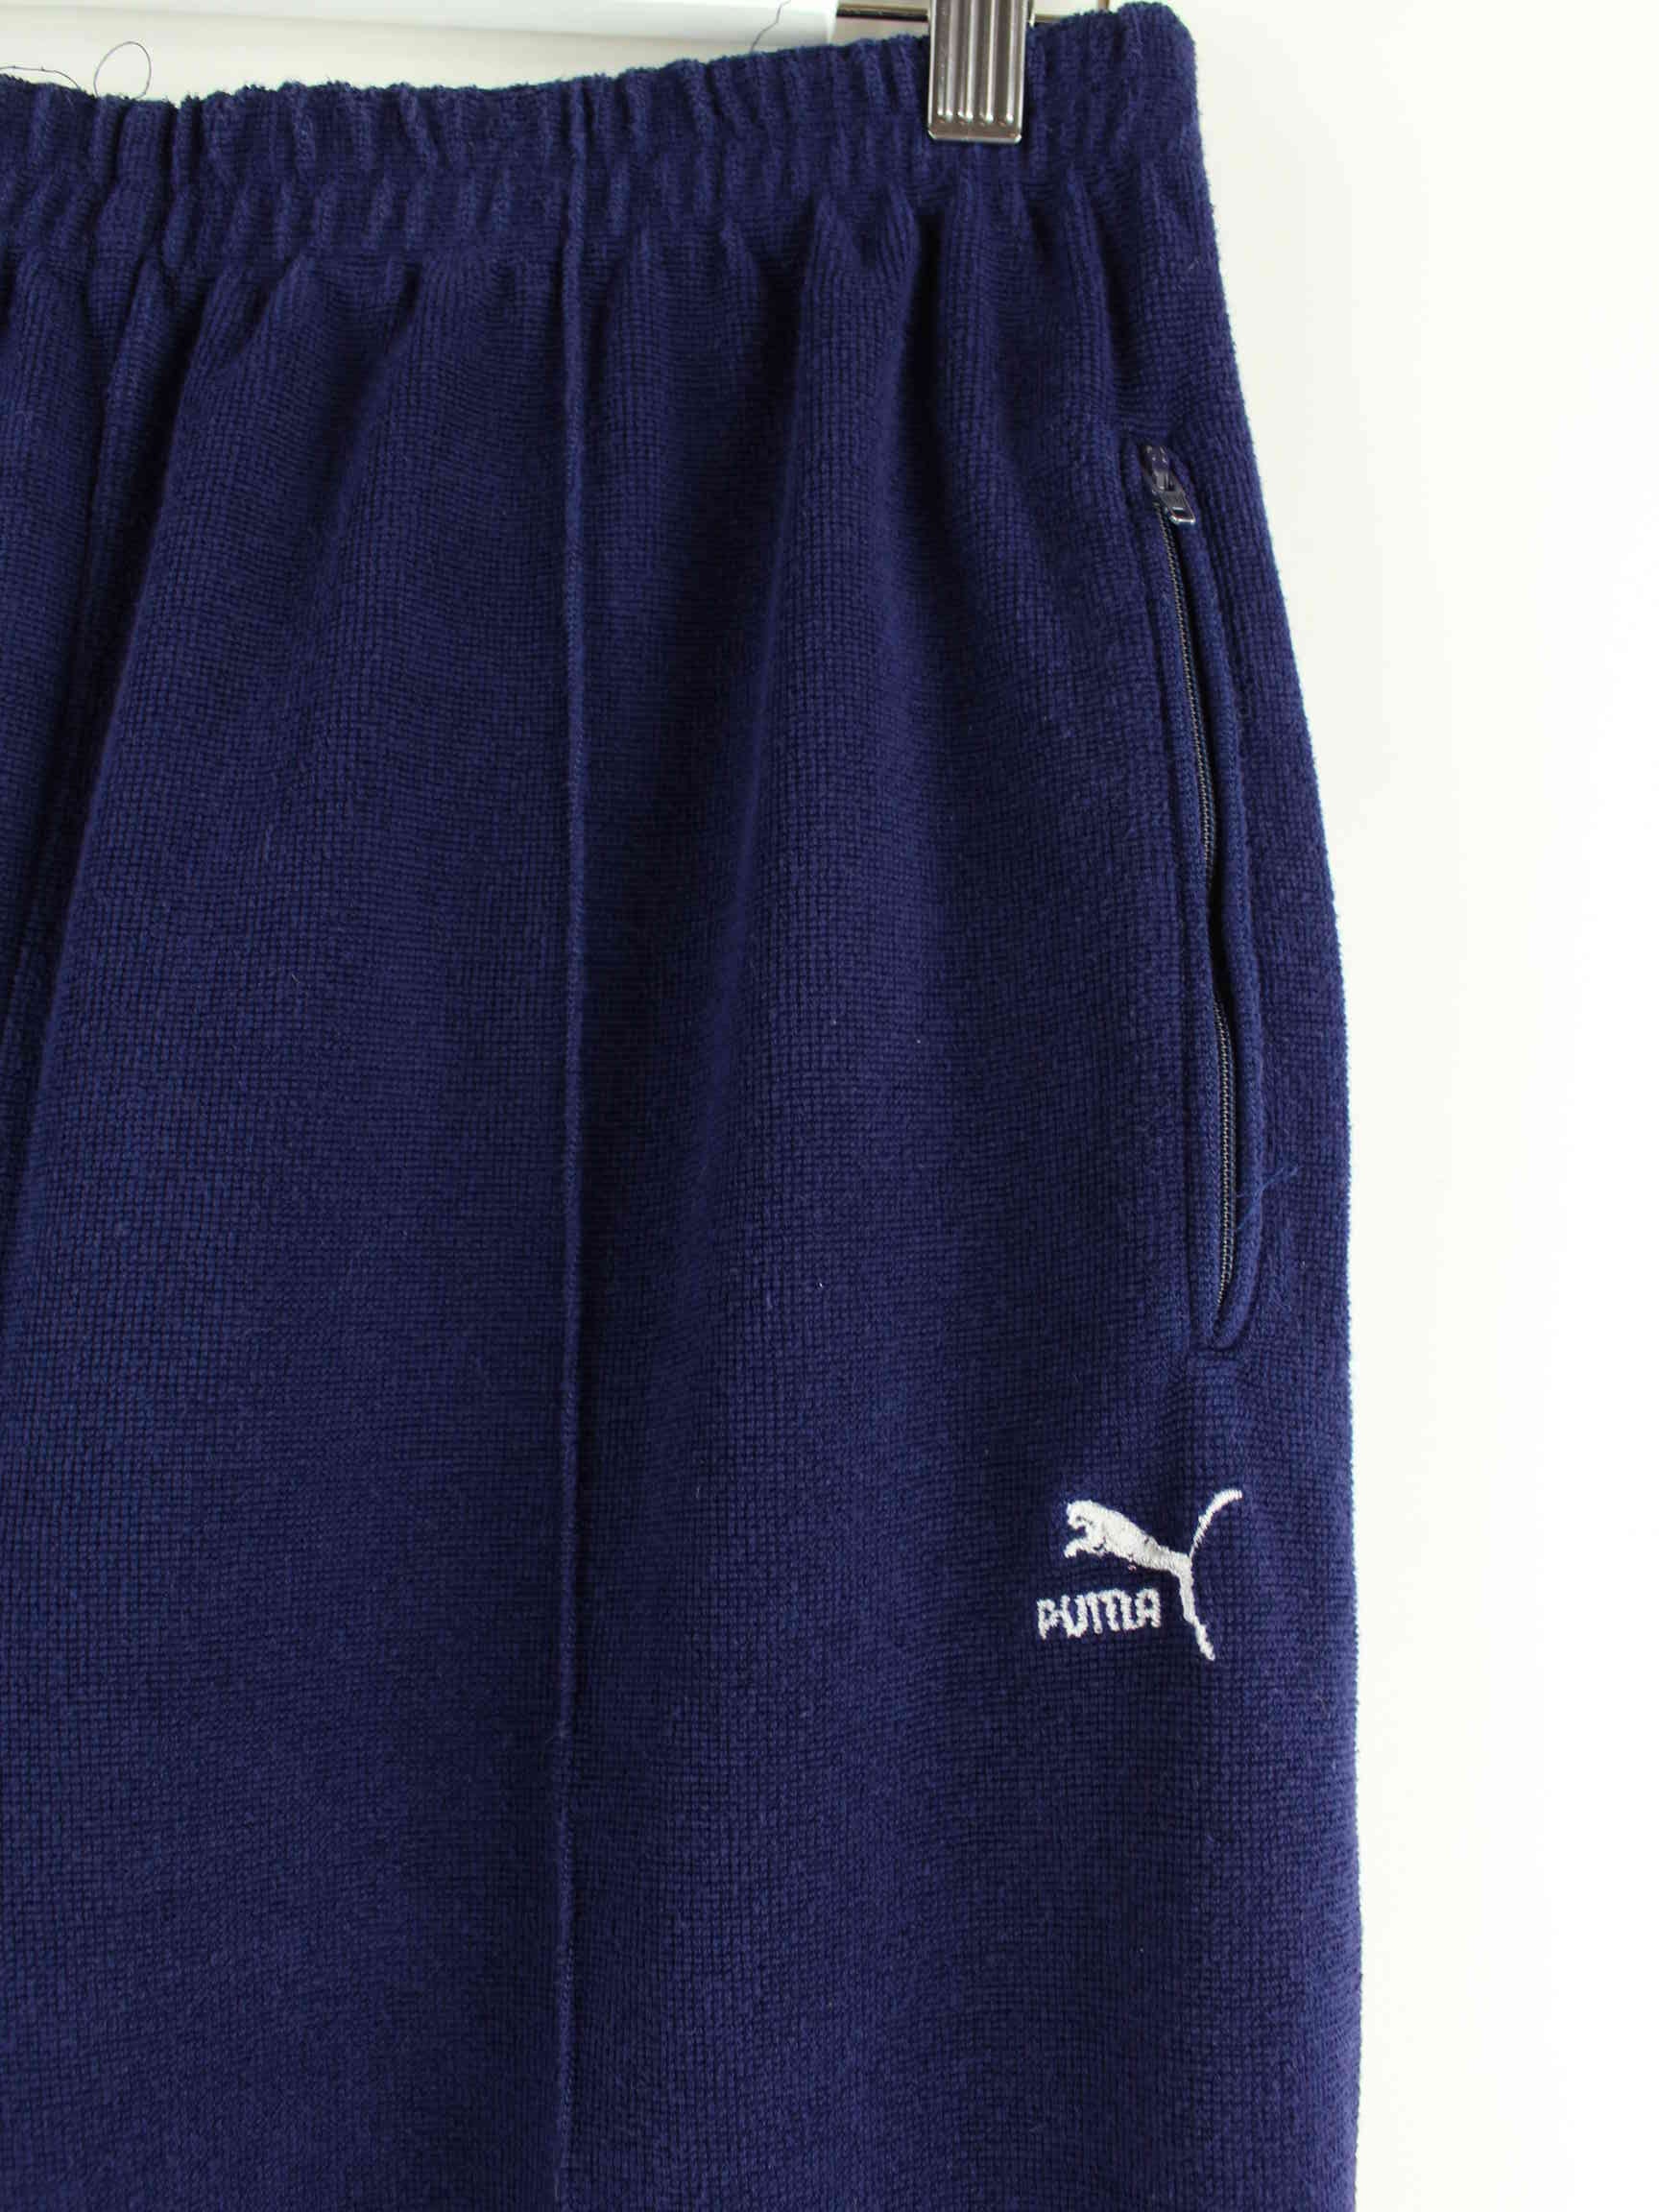 Puma 90s Vintage Jogginghose Blau L (detail image 1)